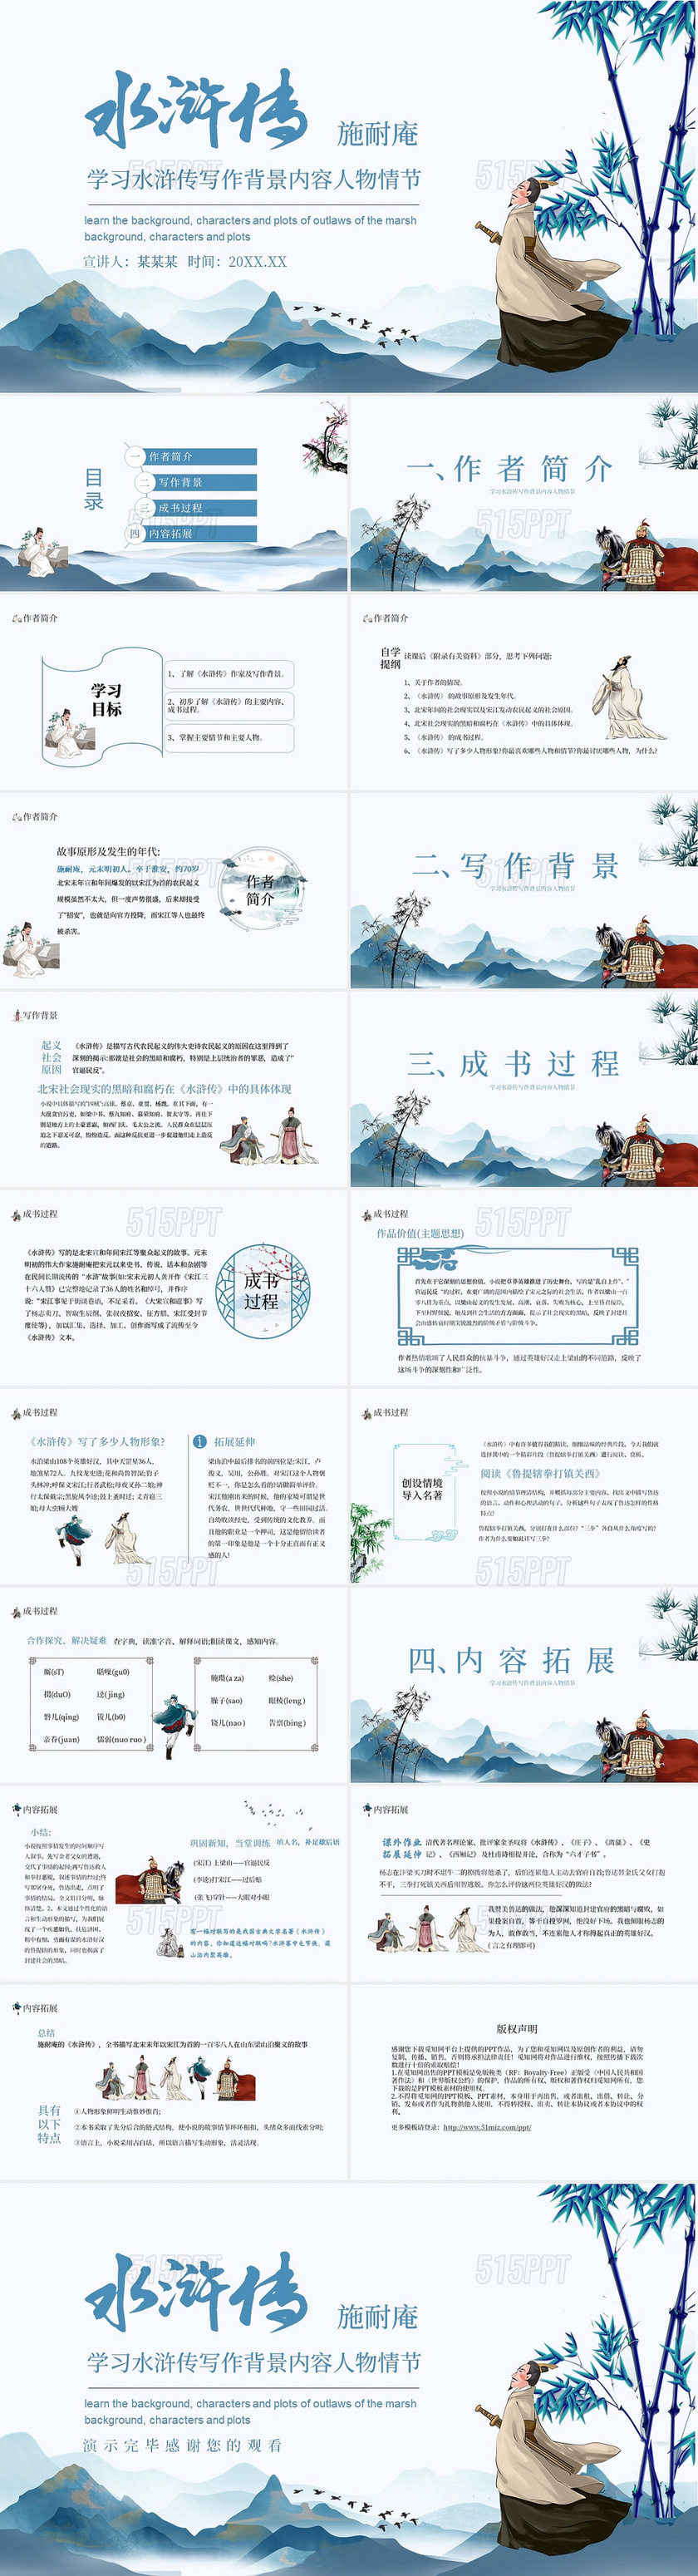 蓝色中国古风学习水浒传动态读书分享教学课件PPT模板